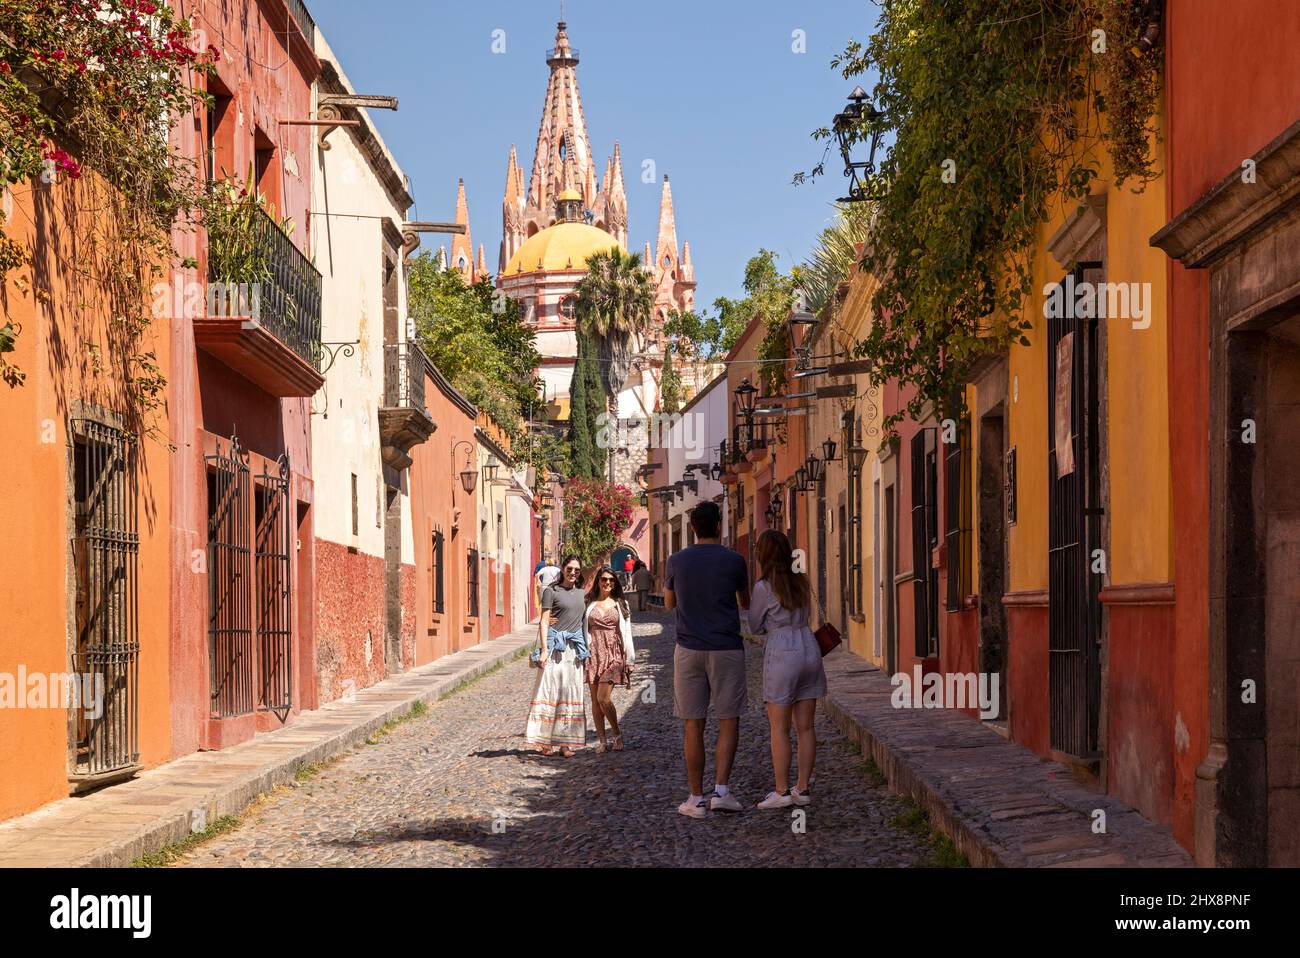 Messico, Guanajuato, San Miguel de Allende, una strada in città con casa tipica e negozi che conduce in città con Parroquia de San Miguel Arcángel Foto Stock